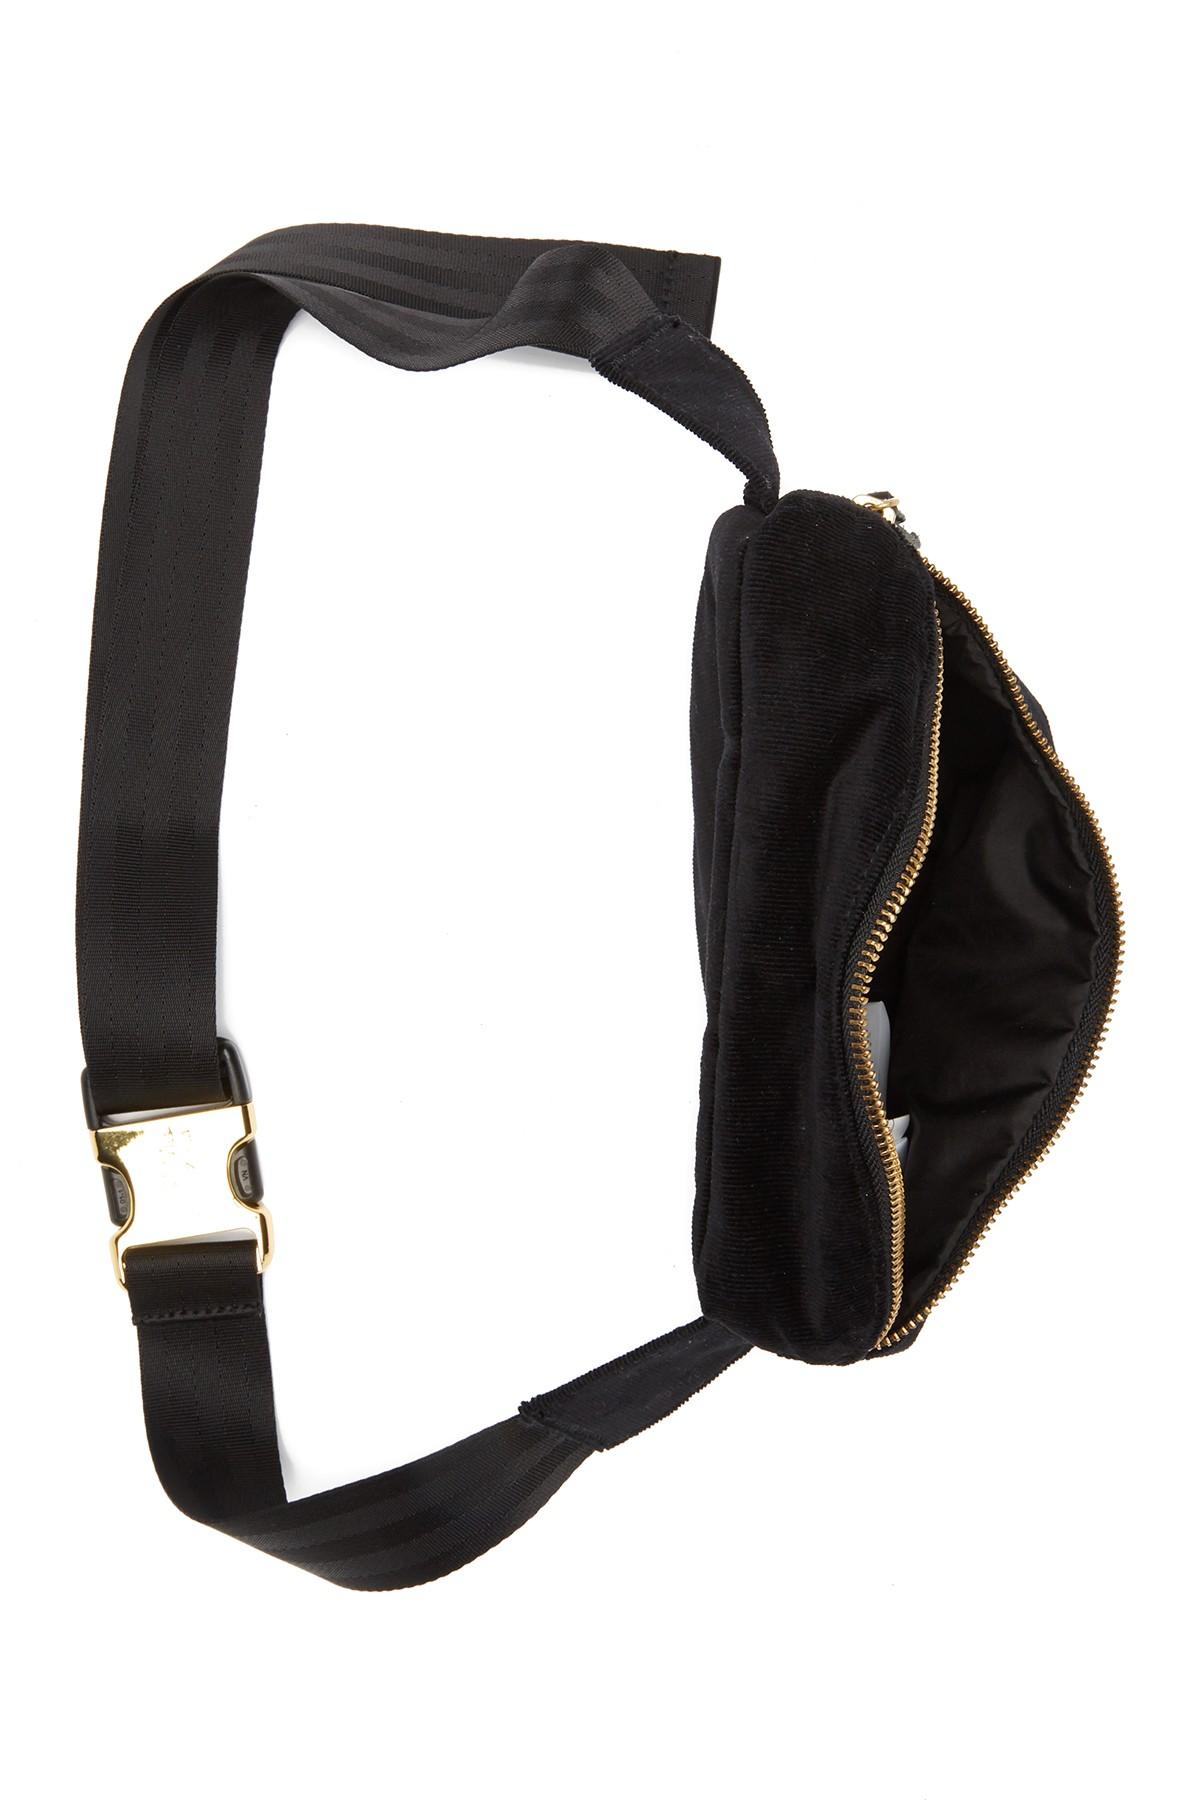 Herschel Supply Co. Fifteen Corduroy Belt Bag in Black for Men - Lyst